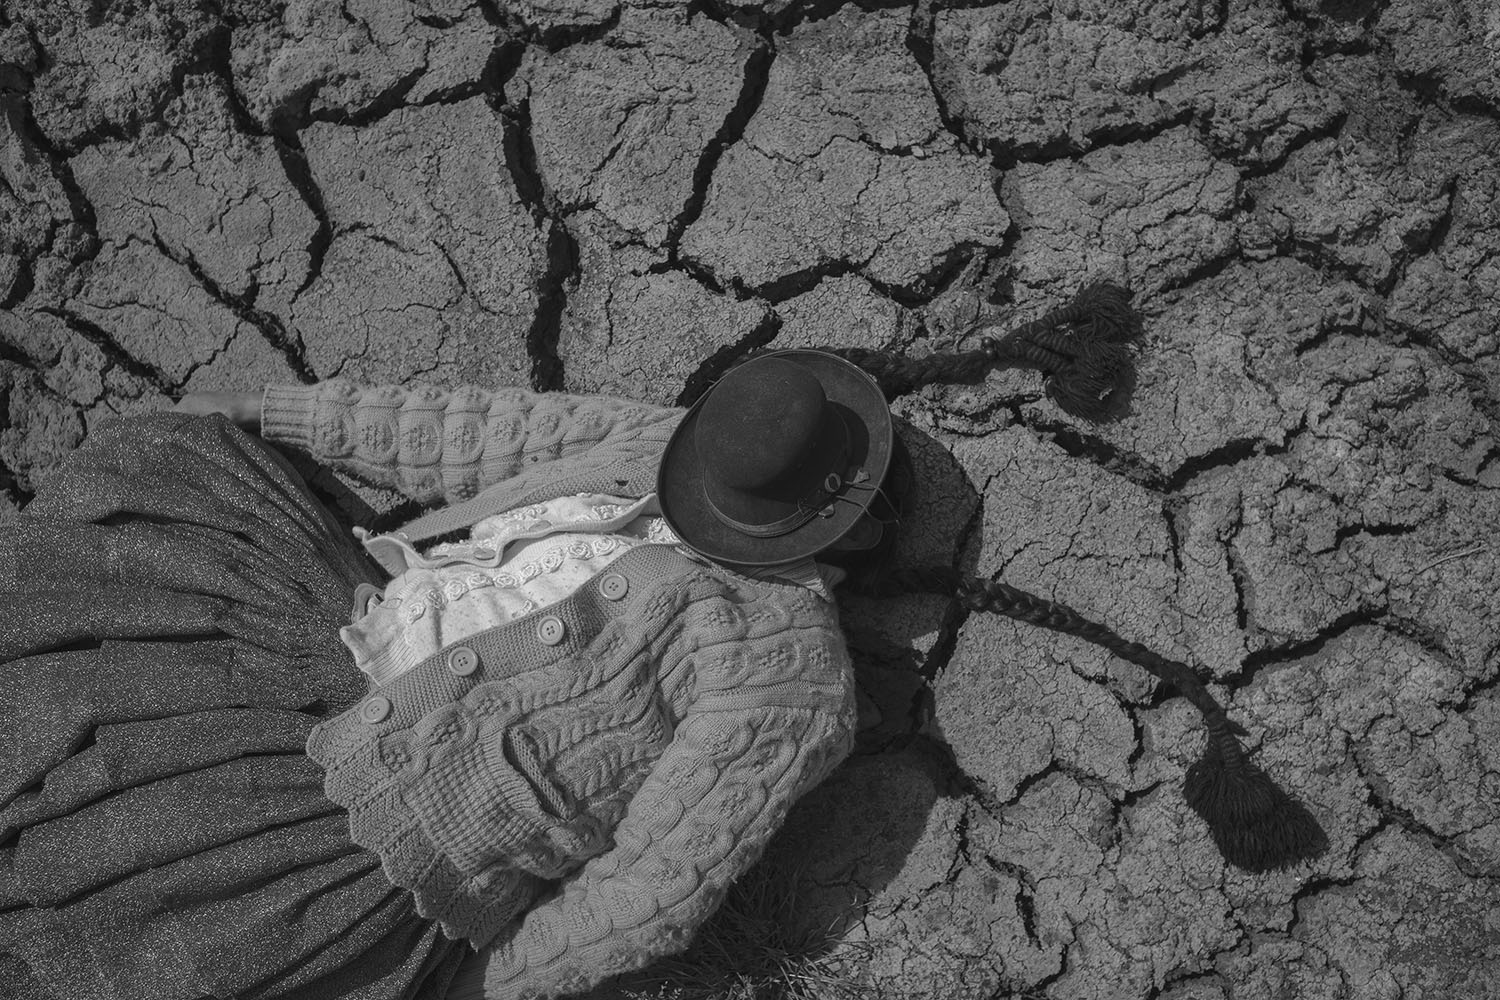 Alessandro Cinque: Perù, a toxic state. La siccità del suolo peruviano.